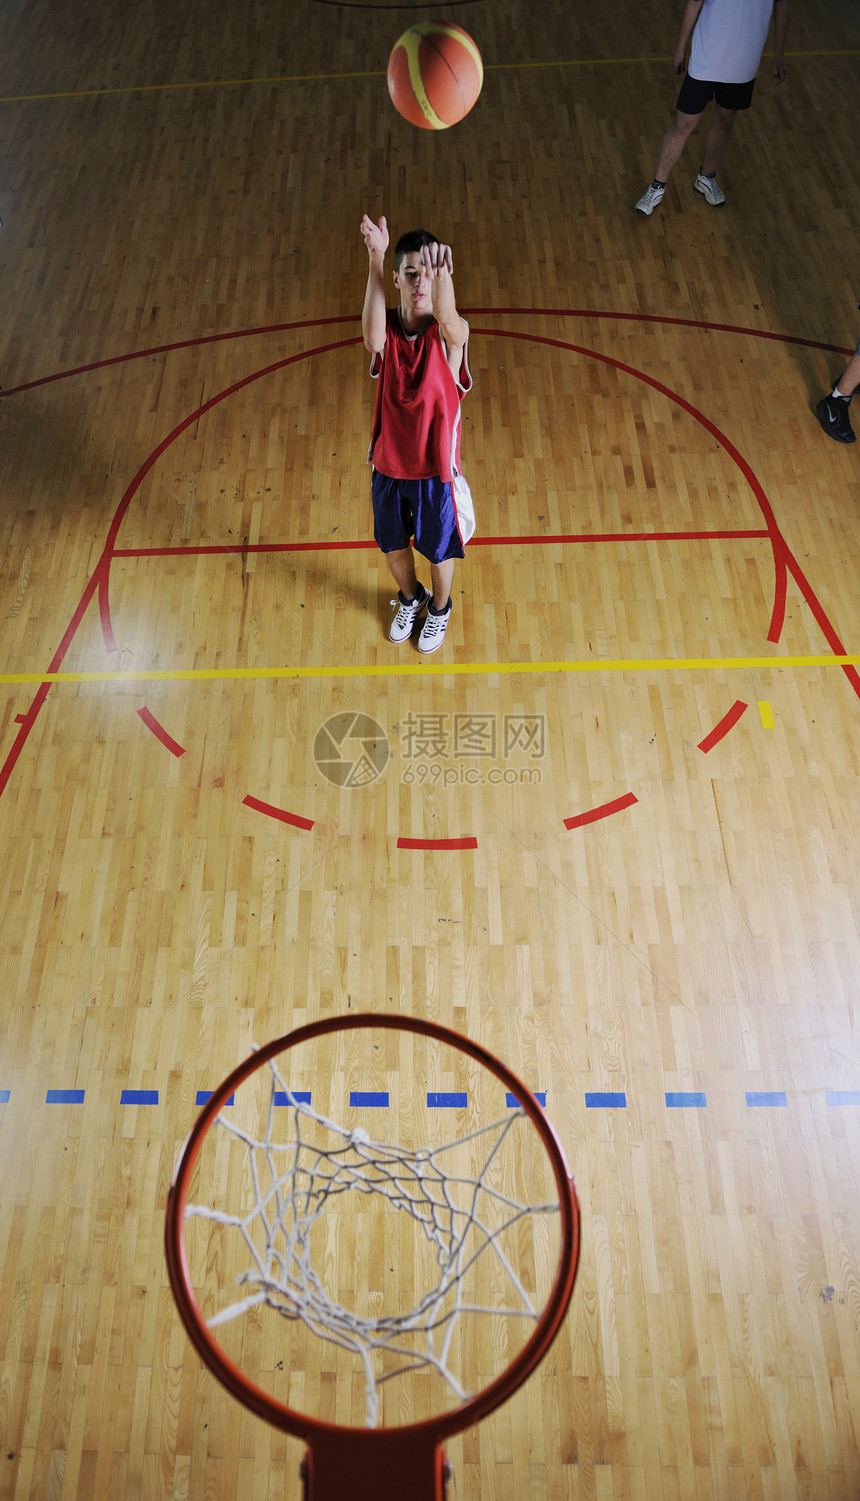 篮球比赛运动员体育馆室内投篮图片